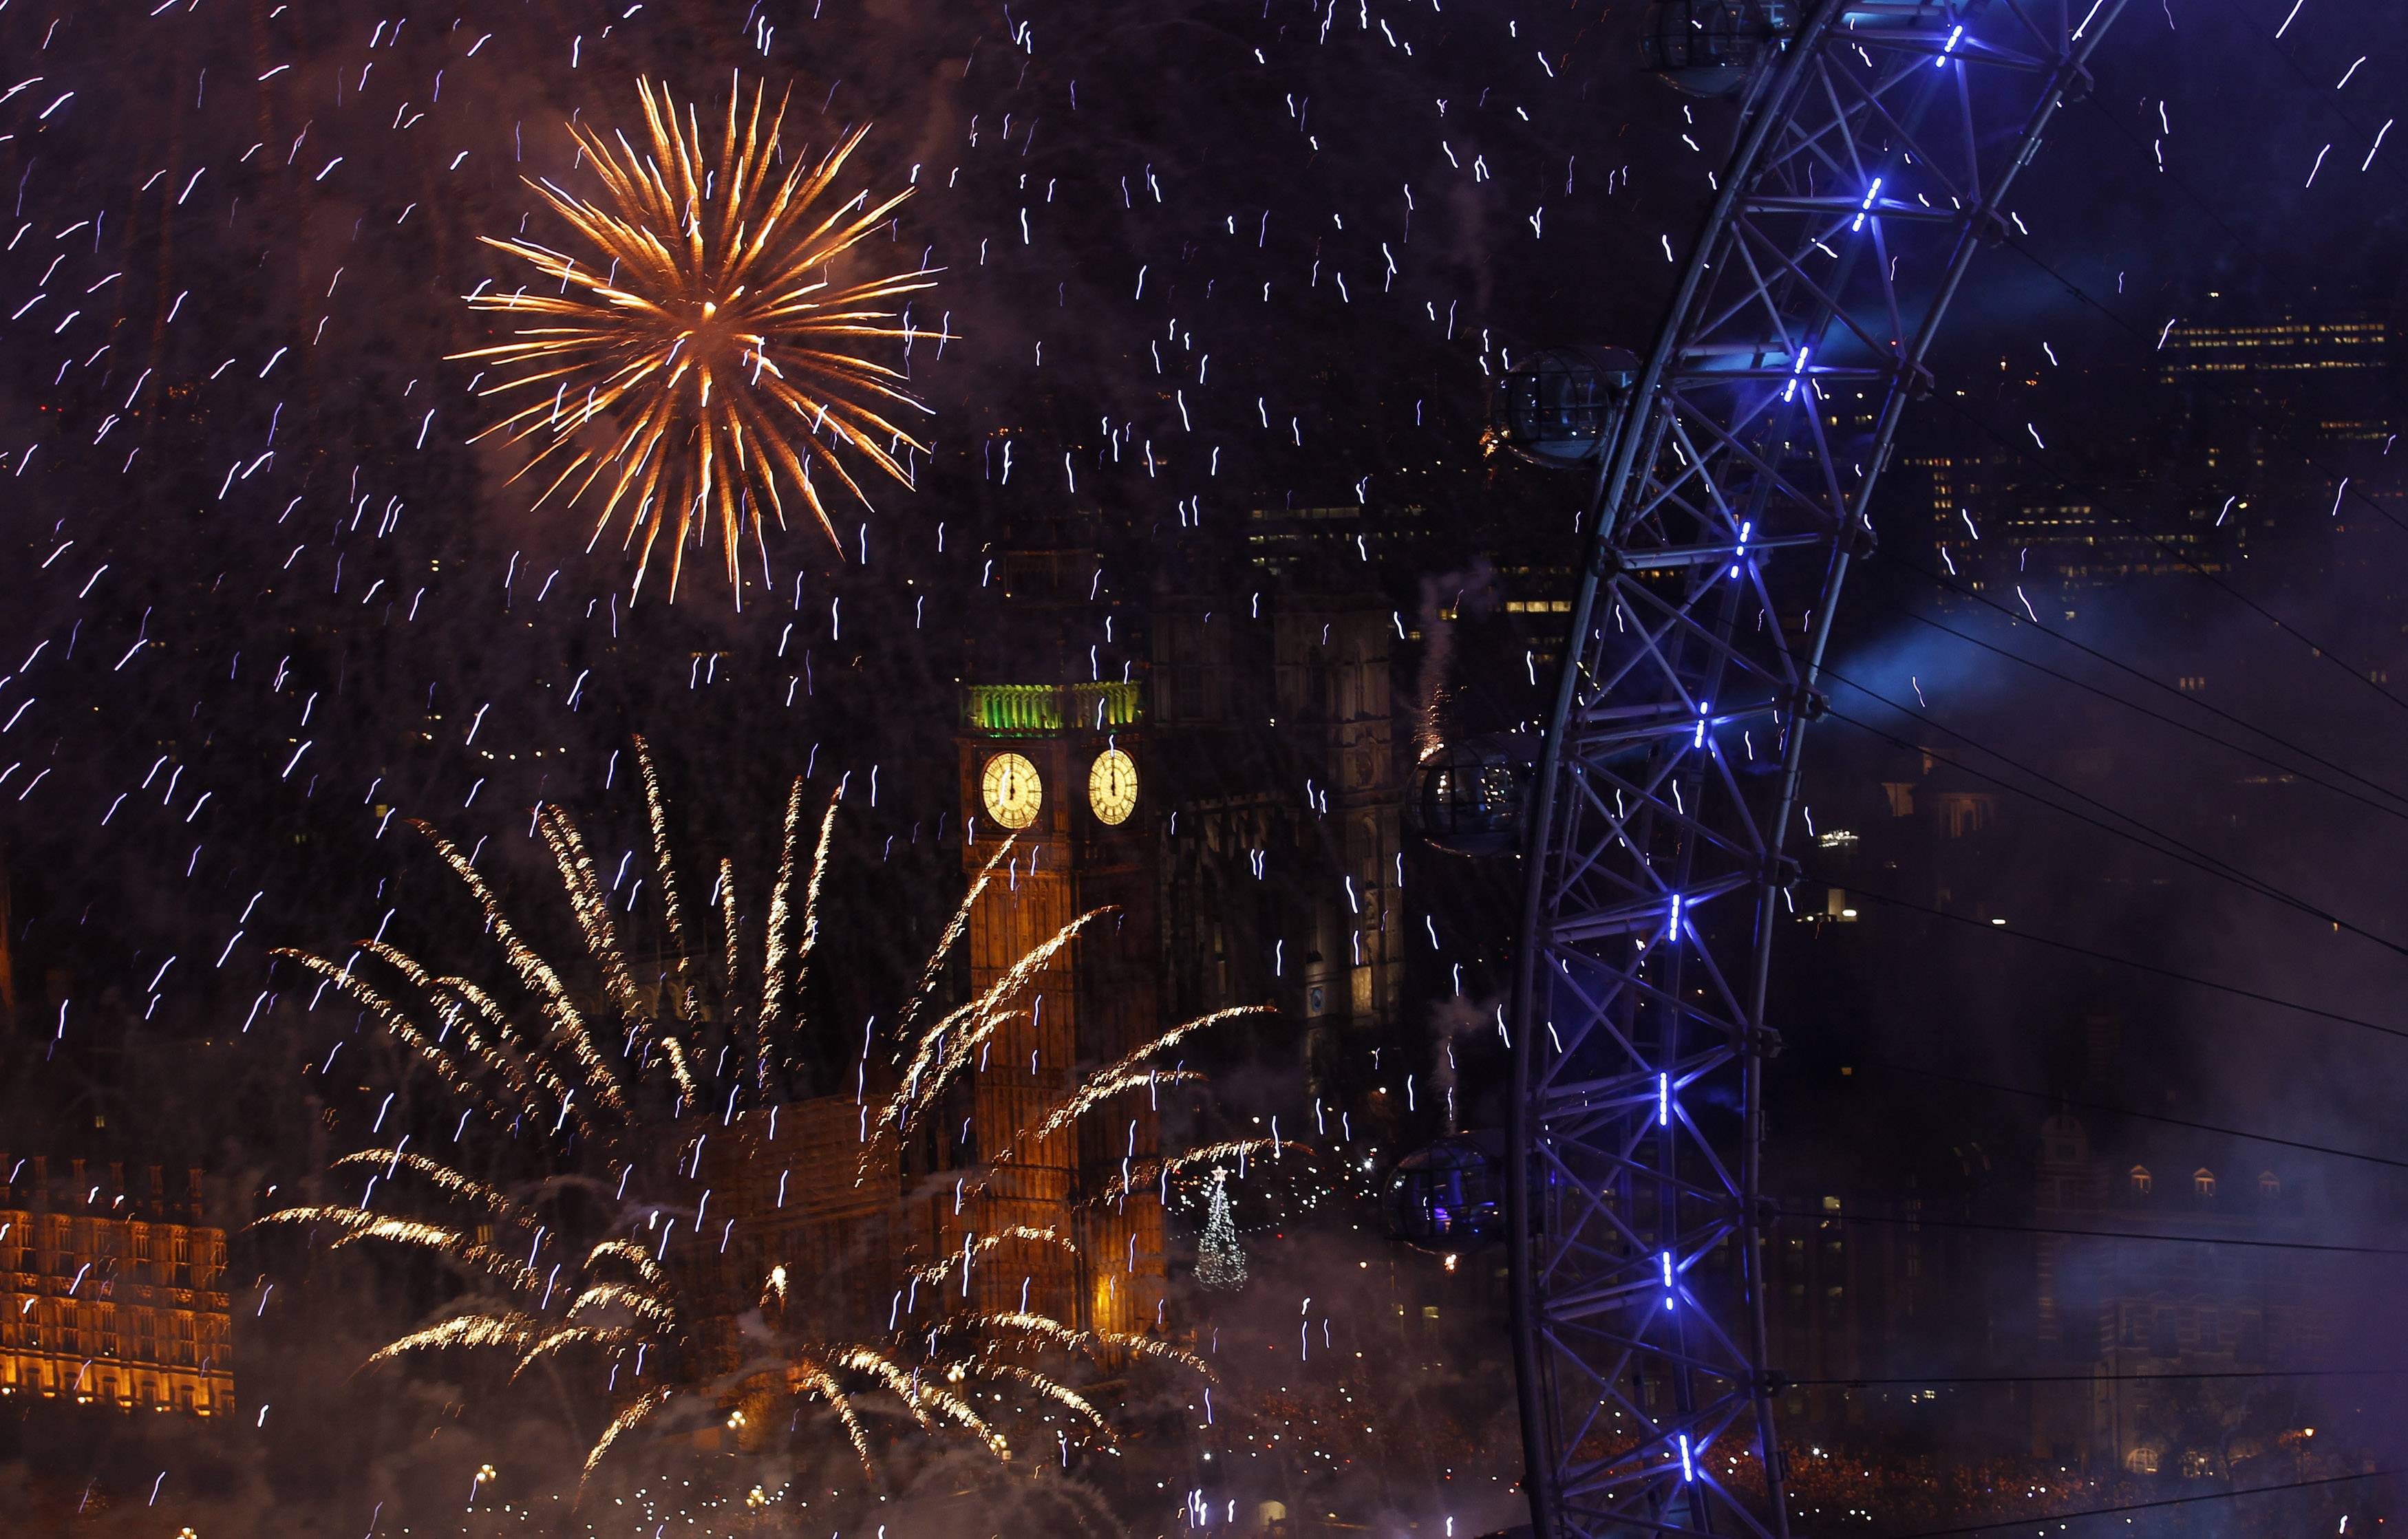 To Big Ben μετρά τα πρώτα δευτερόλεπτα του νέου έτους